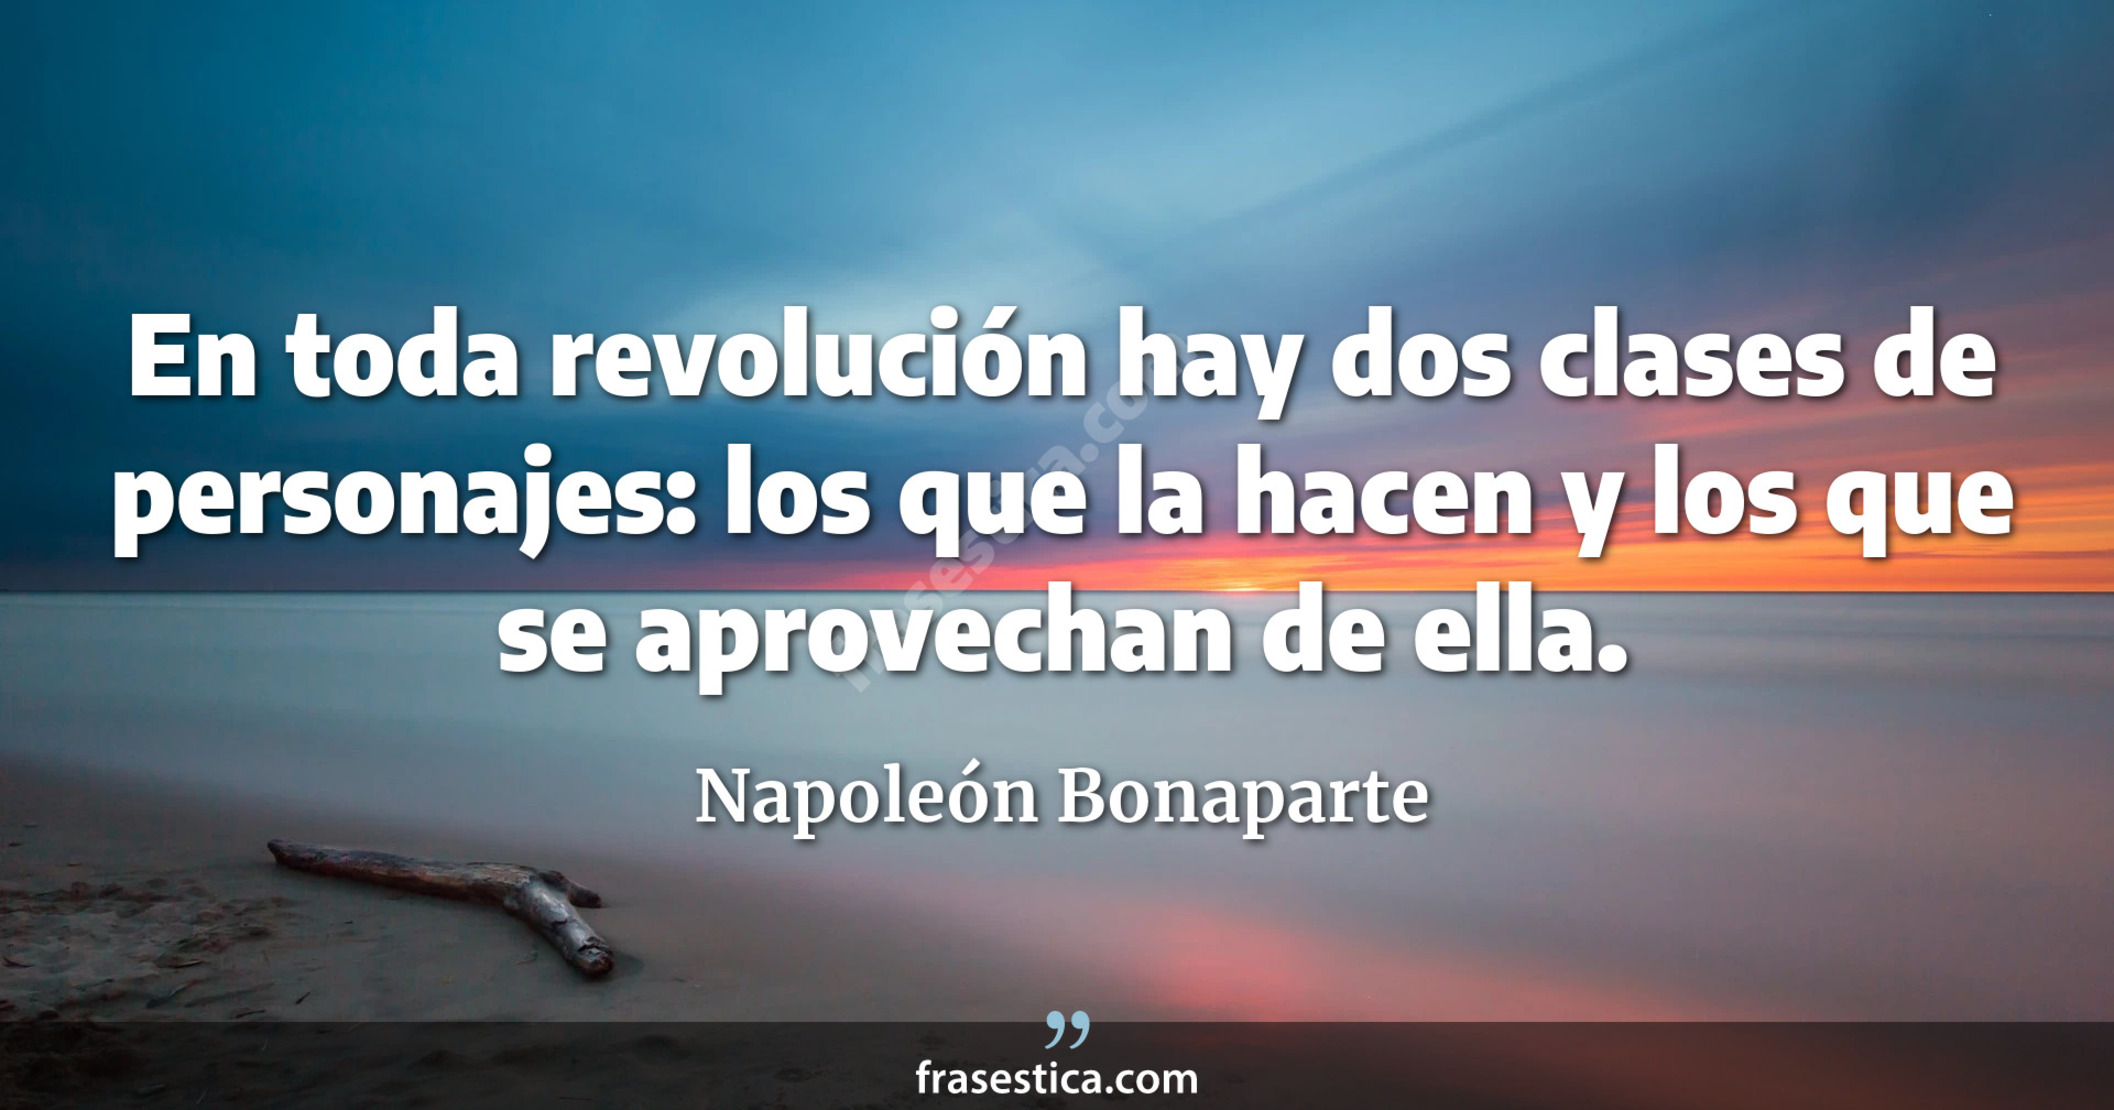 En toda revolución hay dos clases de personajes: los que la hacen y los que se aprovechan de ella. - Napoleón Bonaparte